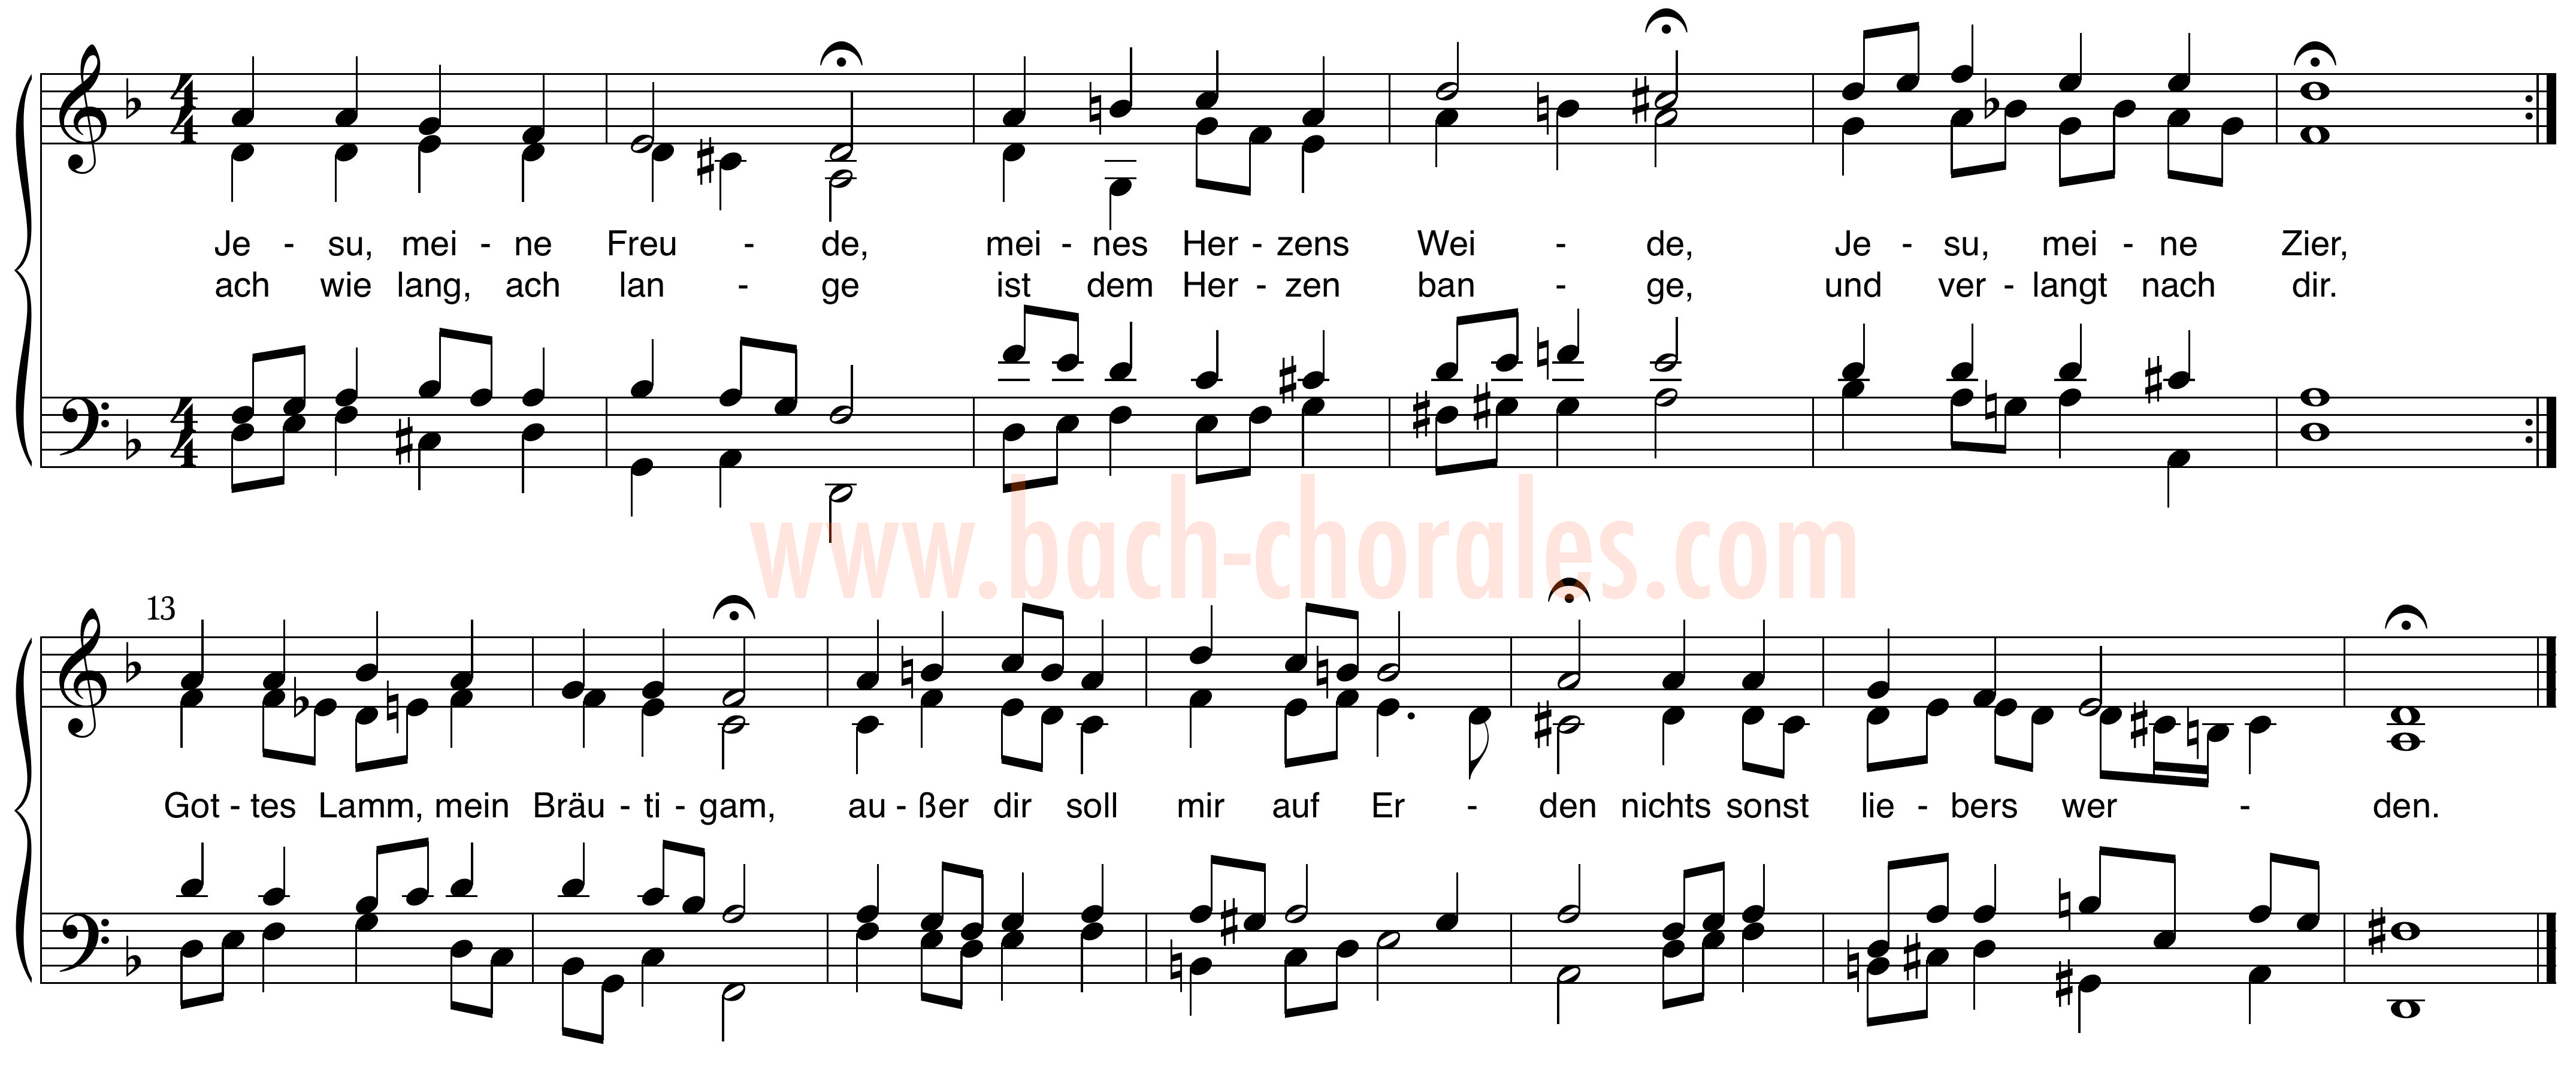 notenbeeld BWV 358 op https://www.bach-chorales.com/